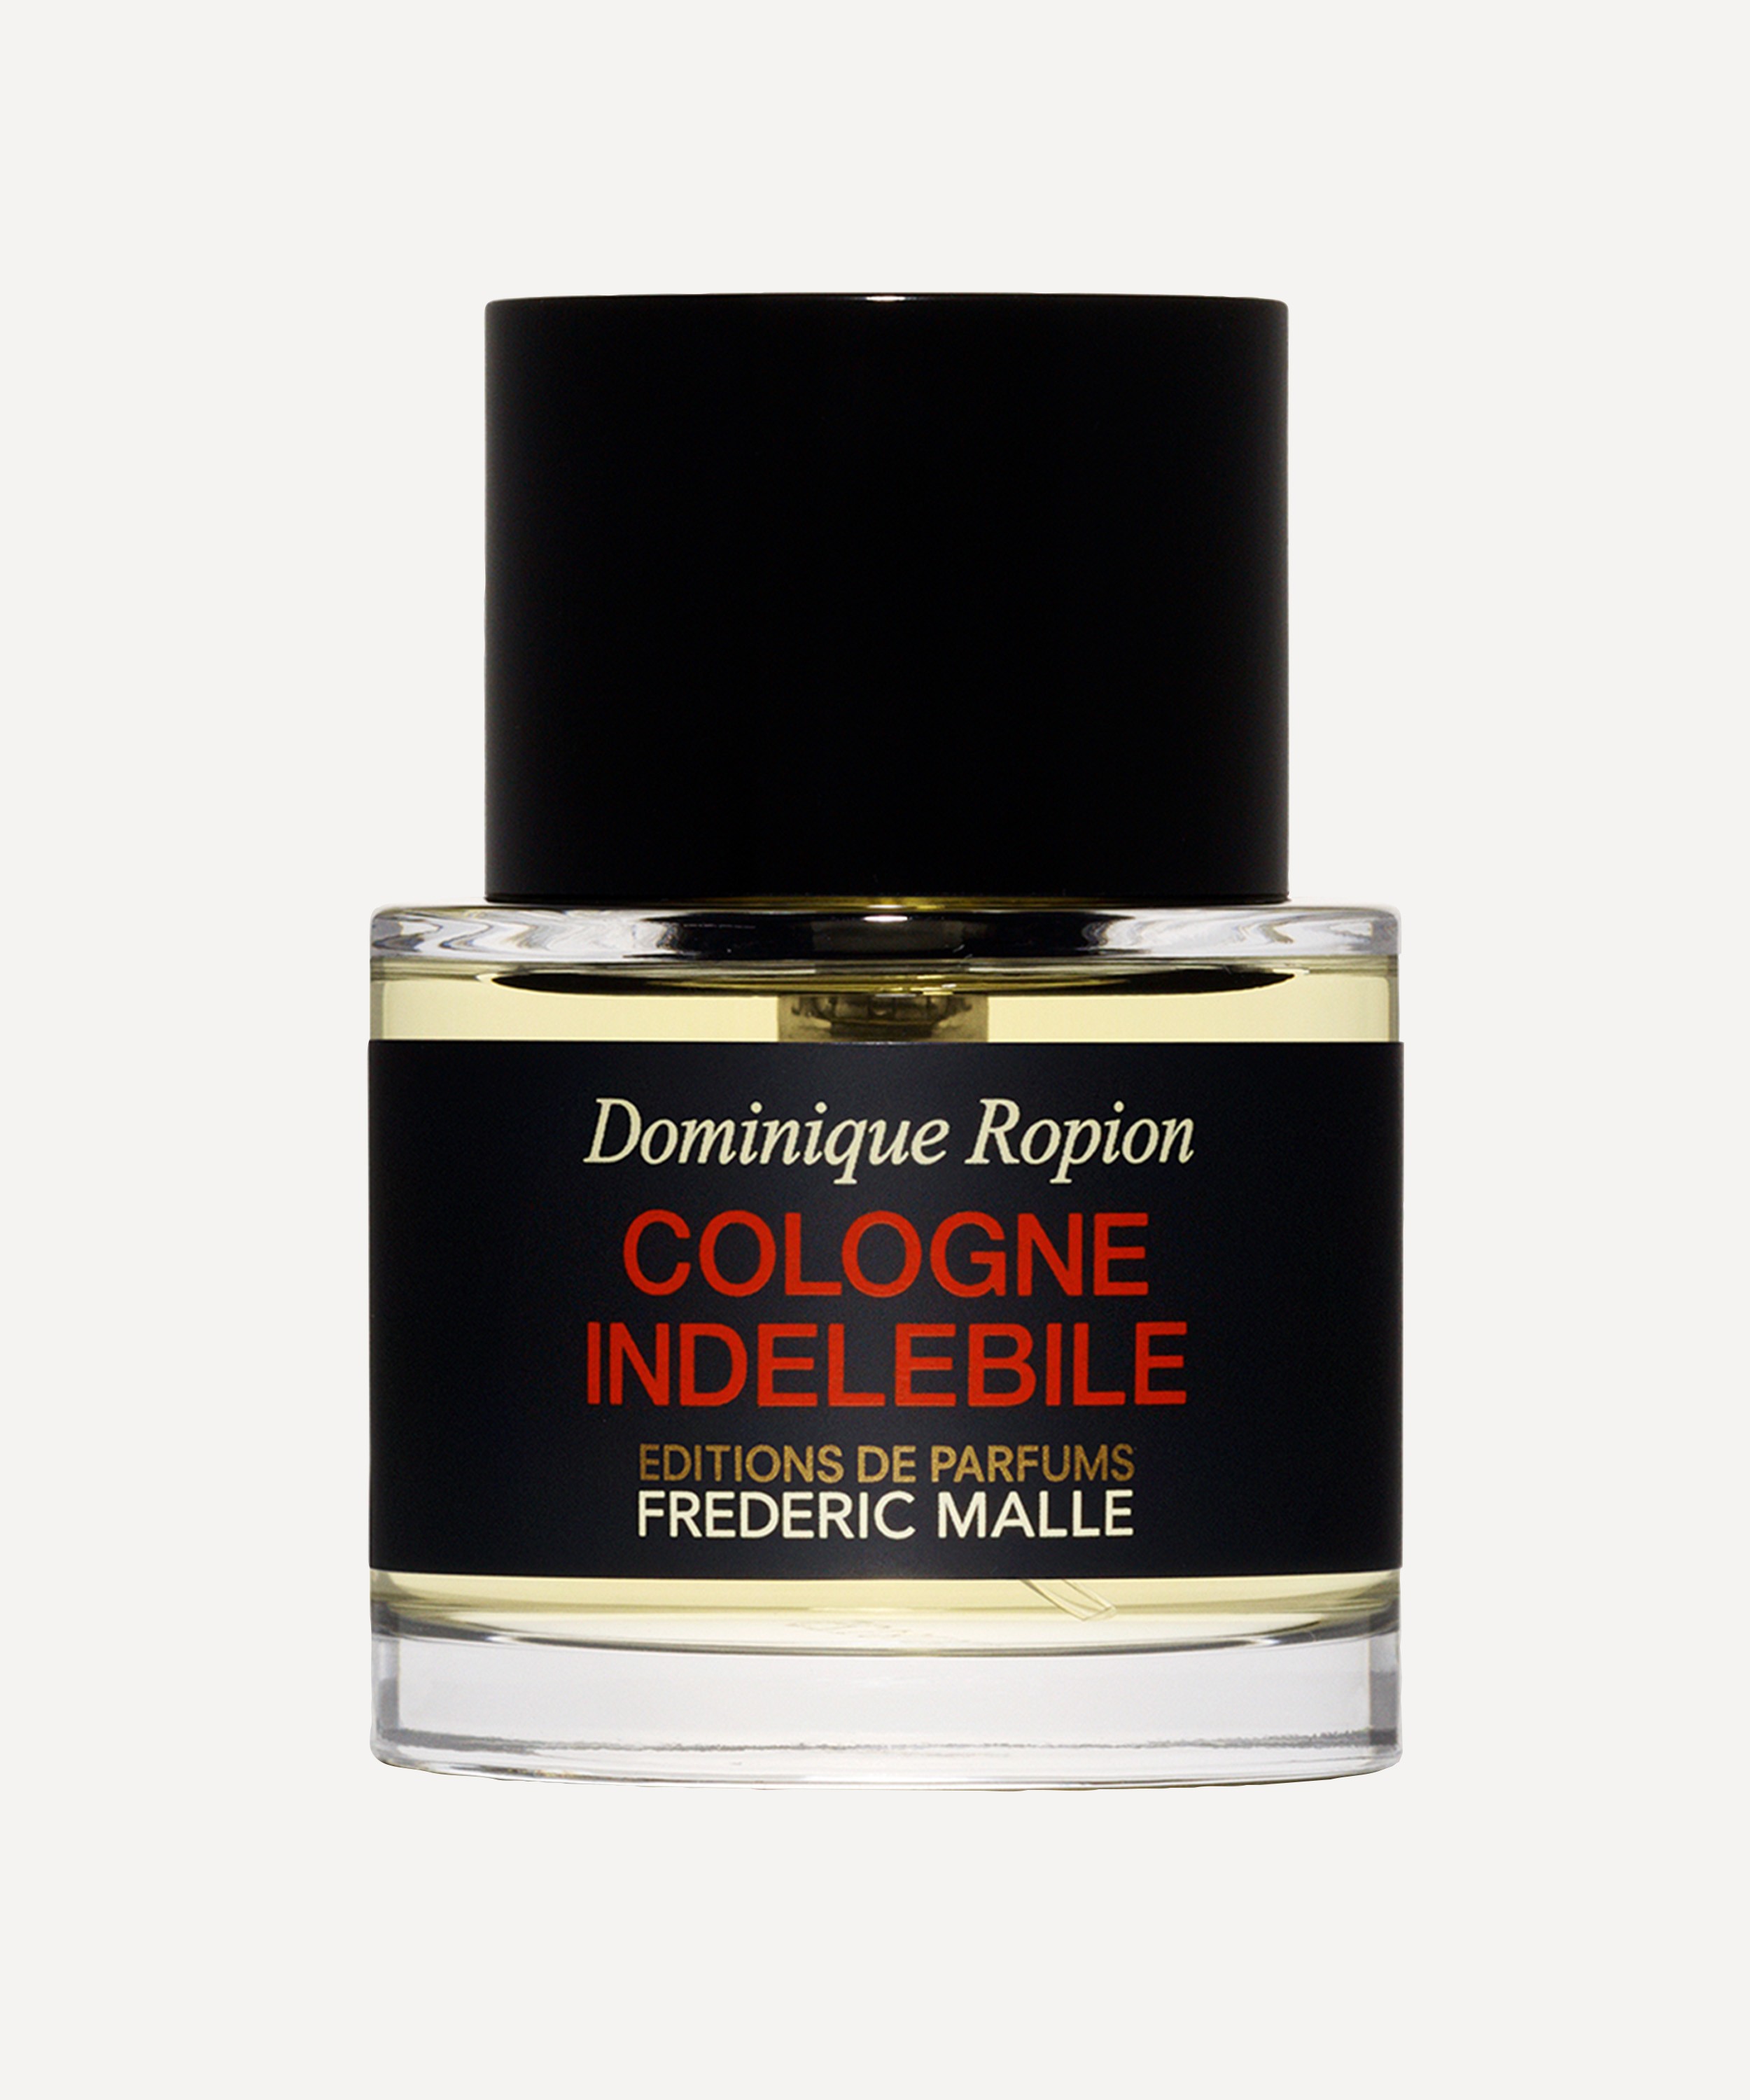 Editions de Parfums Frédéric Malle - Cologne Indelebile 50ml